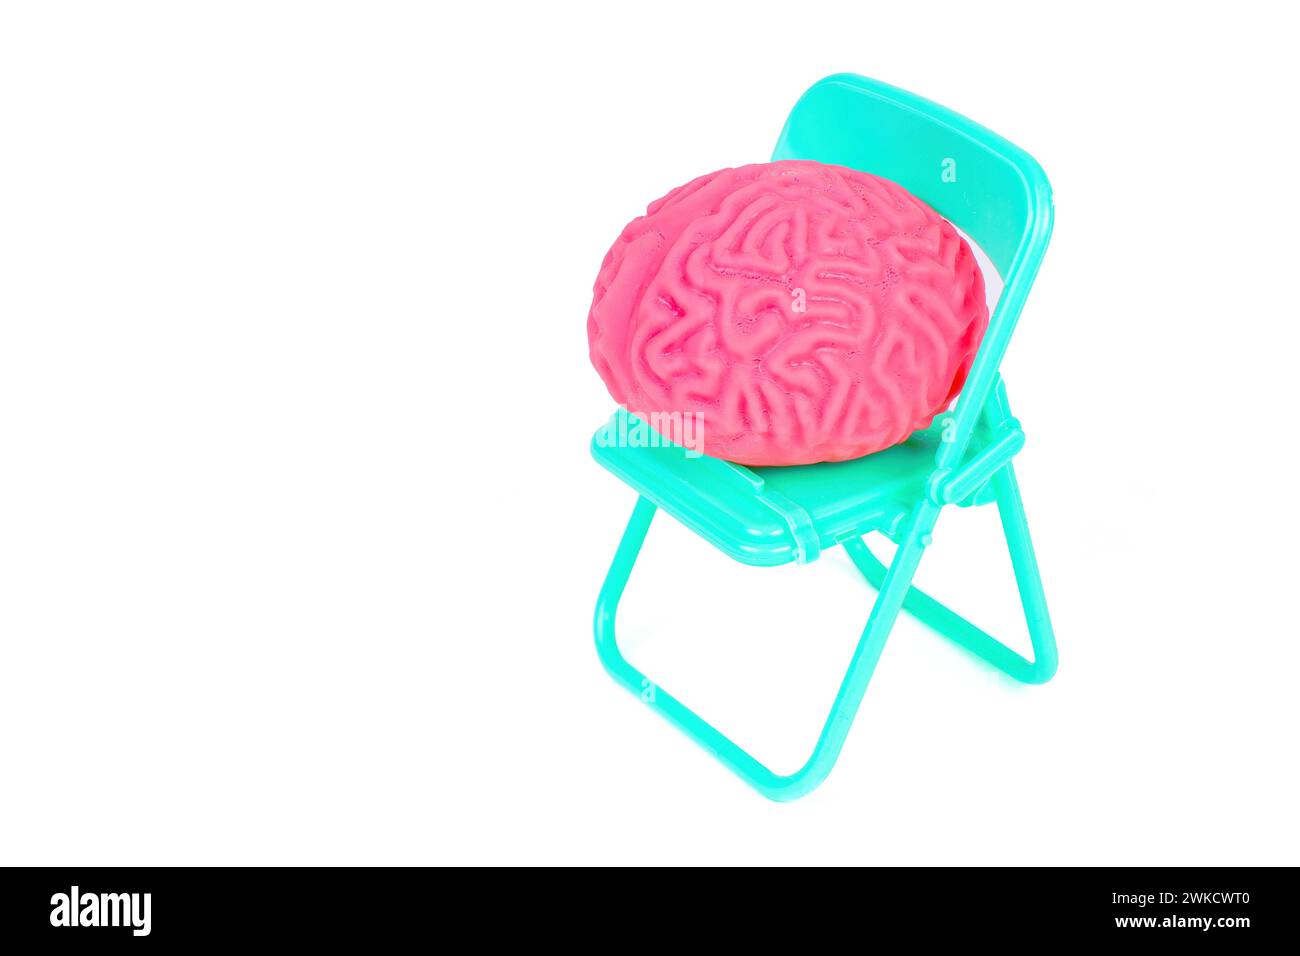 Cervello umano rosa tenue su una sedia pieghevole, isolata sul bianco. Concetto creativo di anticipazione del paziente. Foto Stock